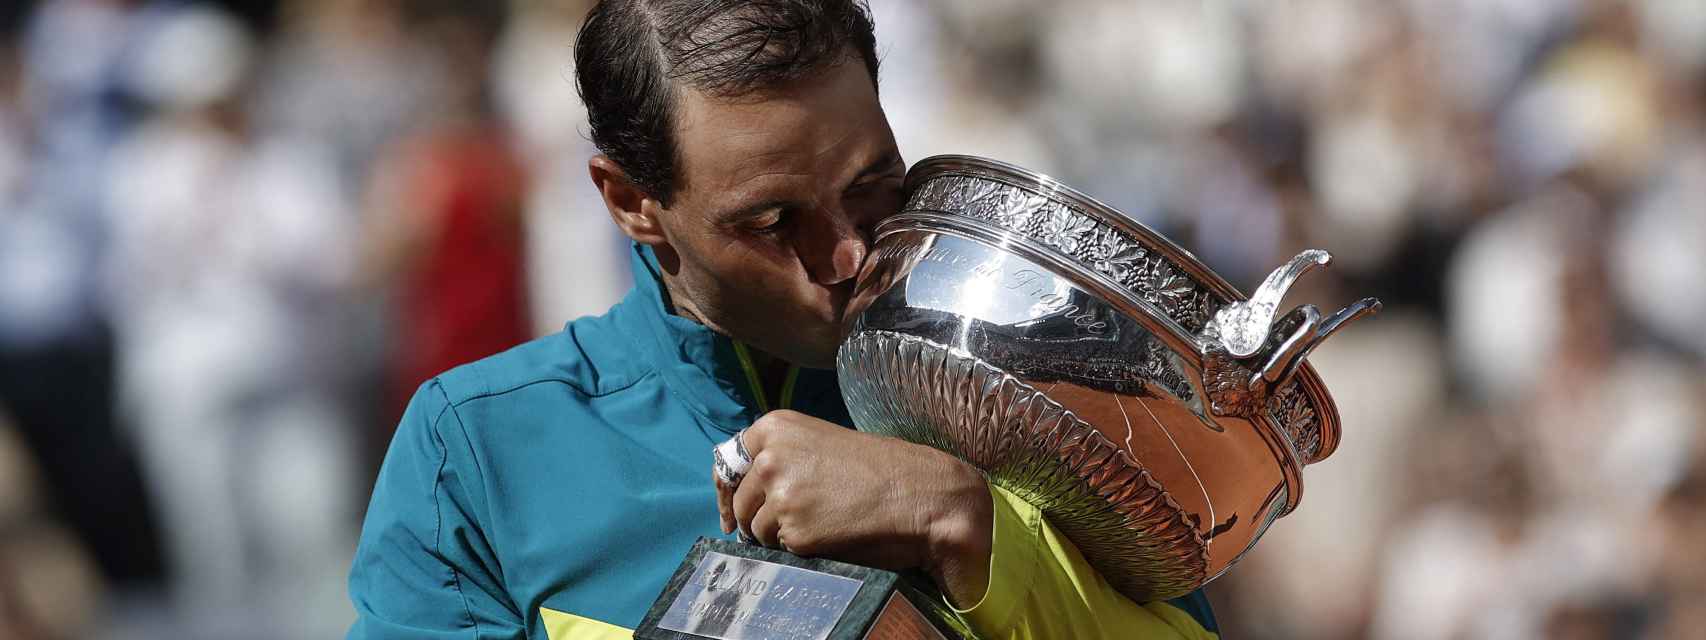 Rafa Nadal gana su 14º Roland Garros